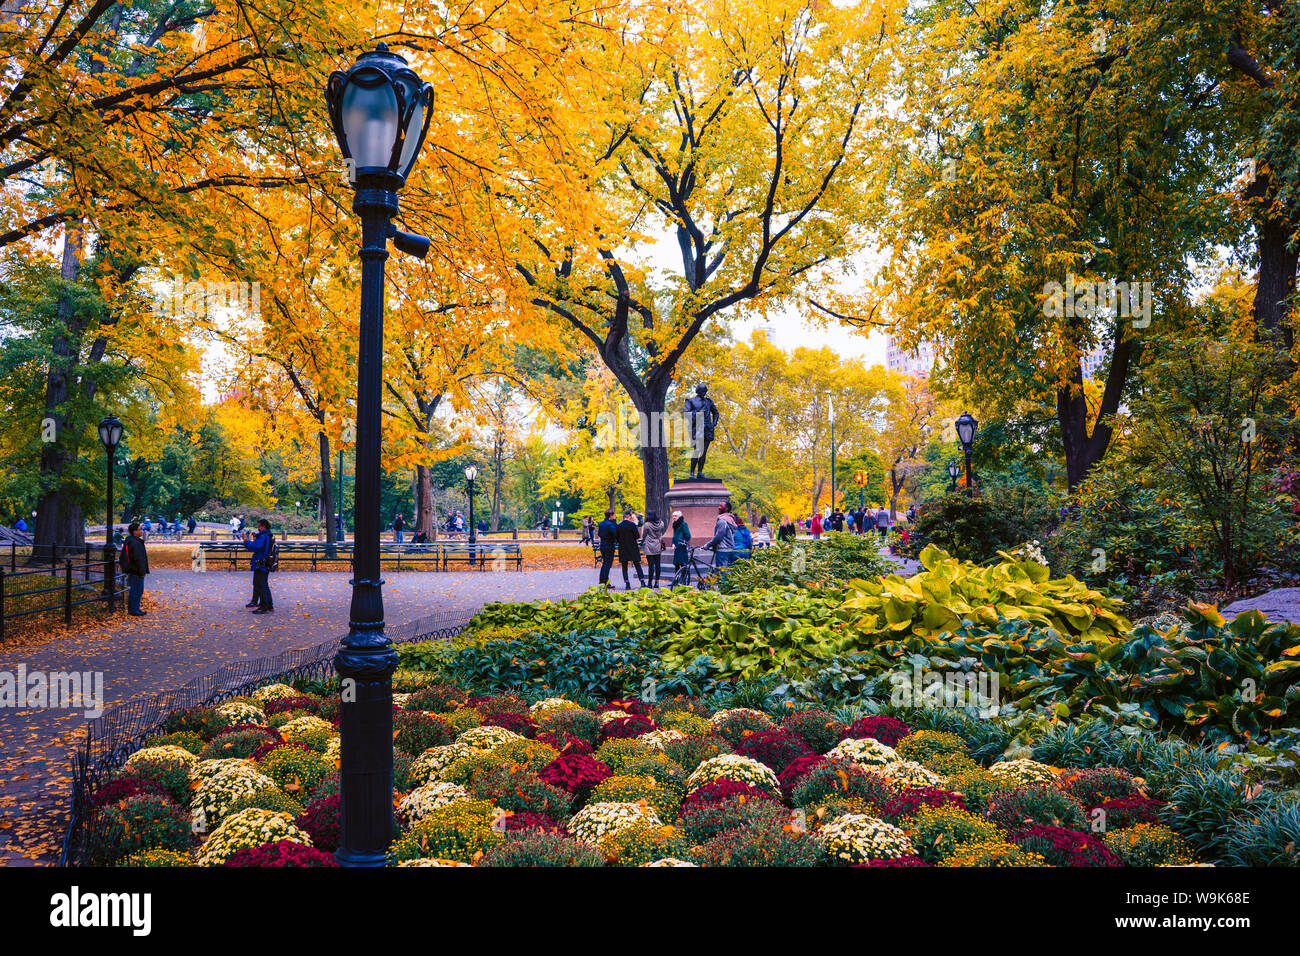 Scène d'automne, Central Park, New York City, États-Unis d'Amérique, Amérique du Nord Banque D'Images